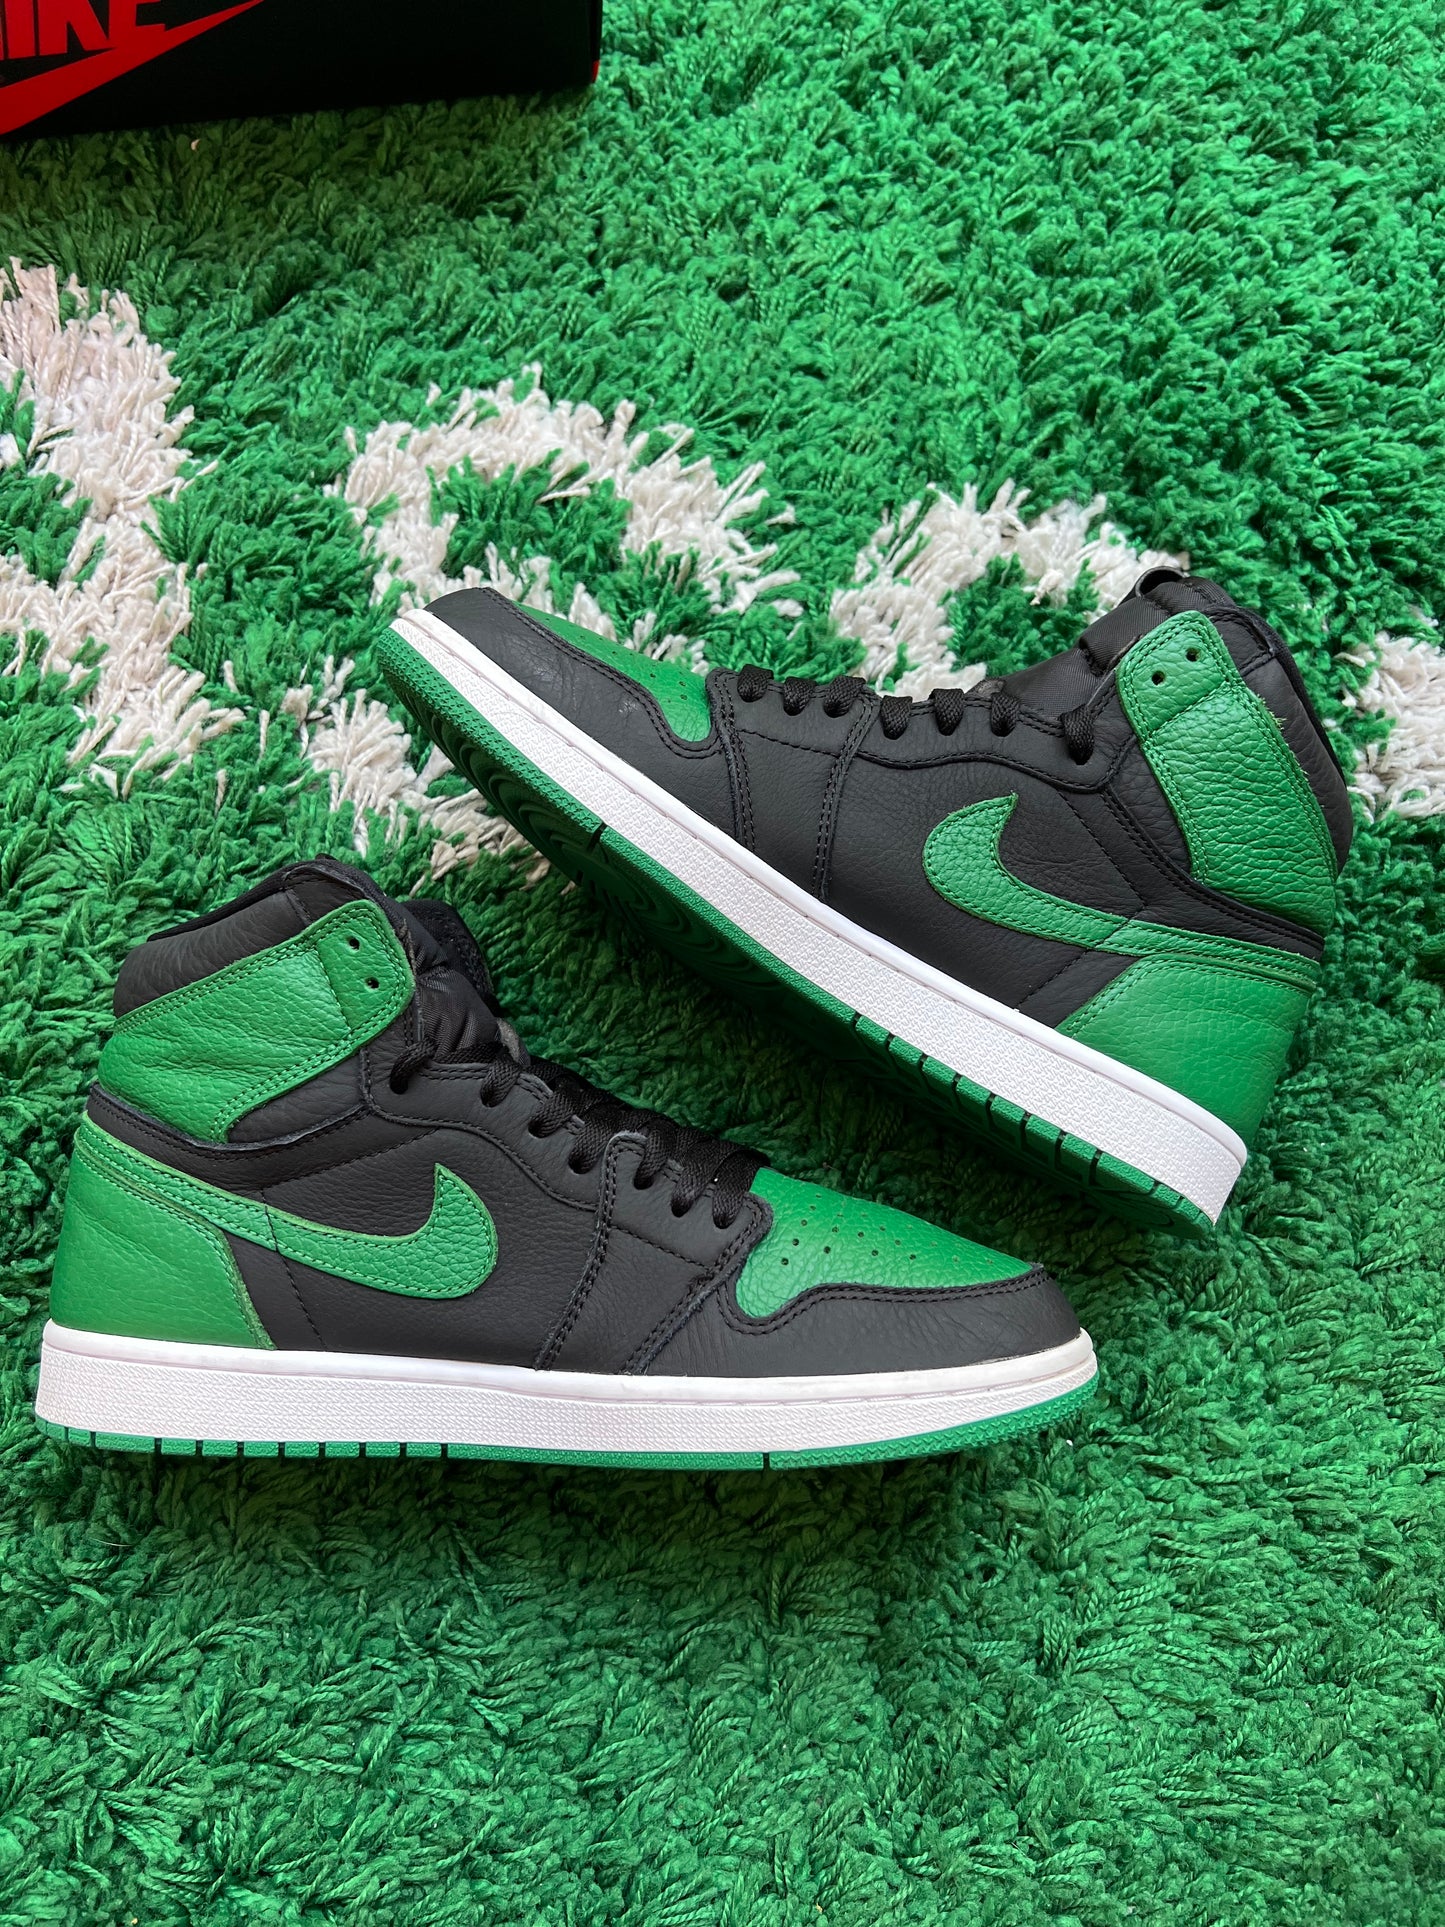 Jordan 1 High “Pine Green 2.0”